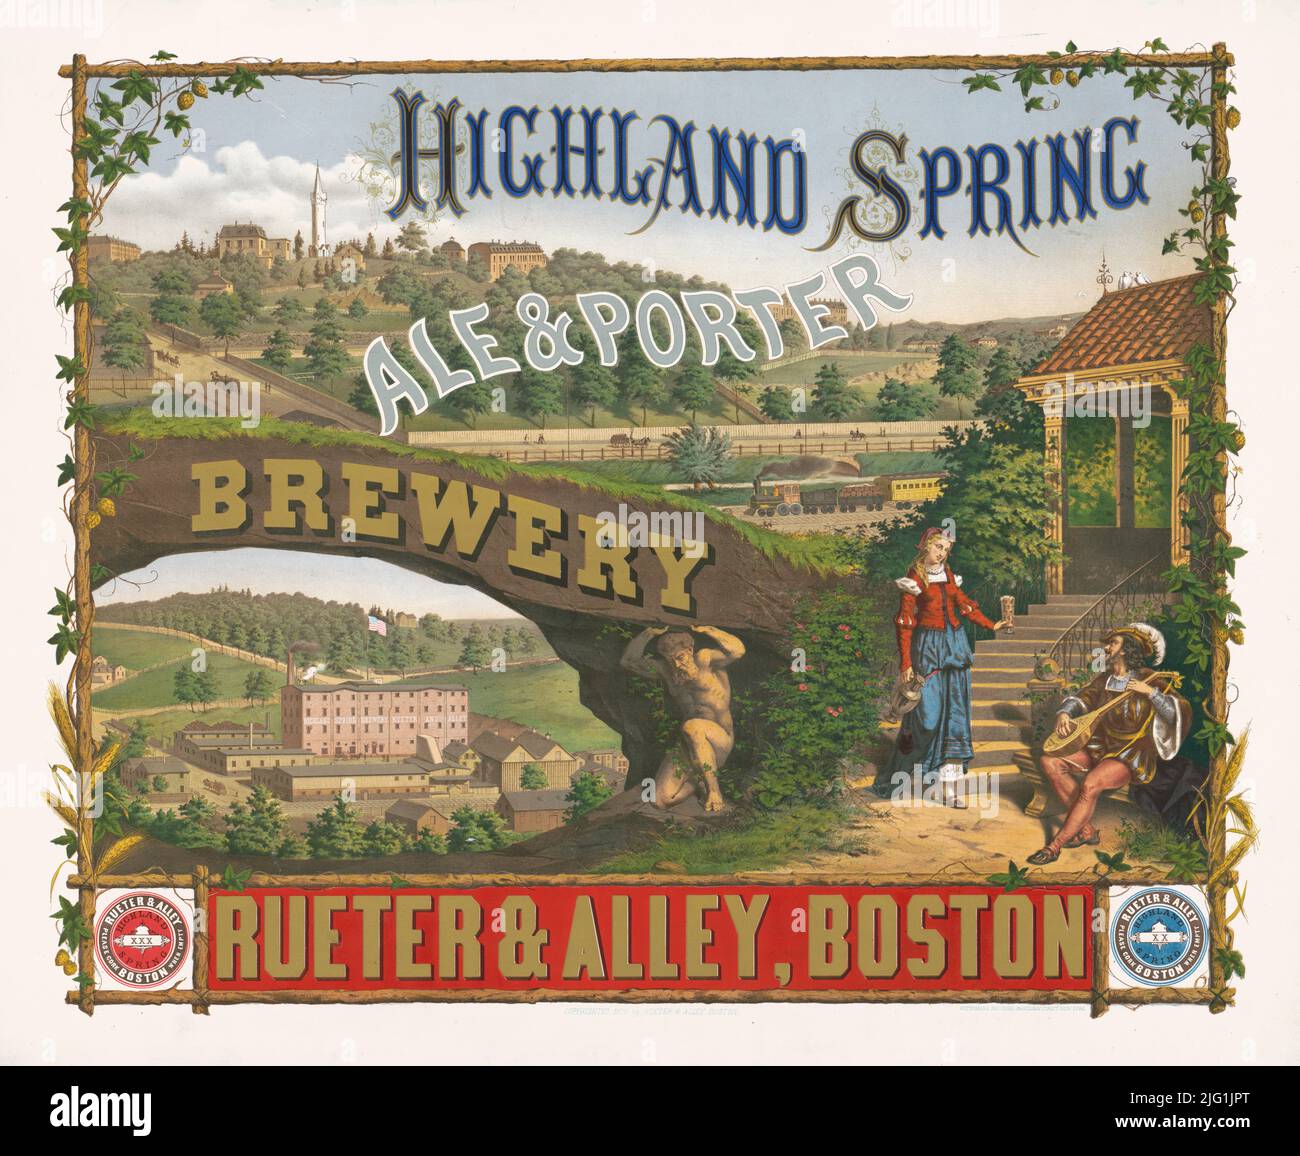 1876 Anzeige für Highland Spring Ale & Porter Brewery, Rueter & Alley, Boston, Massachusetts. Lithographie von Wittemann Bros. Stockfoto